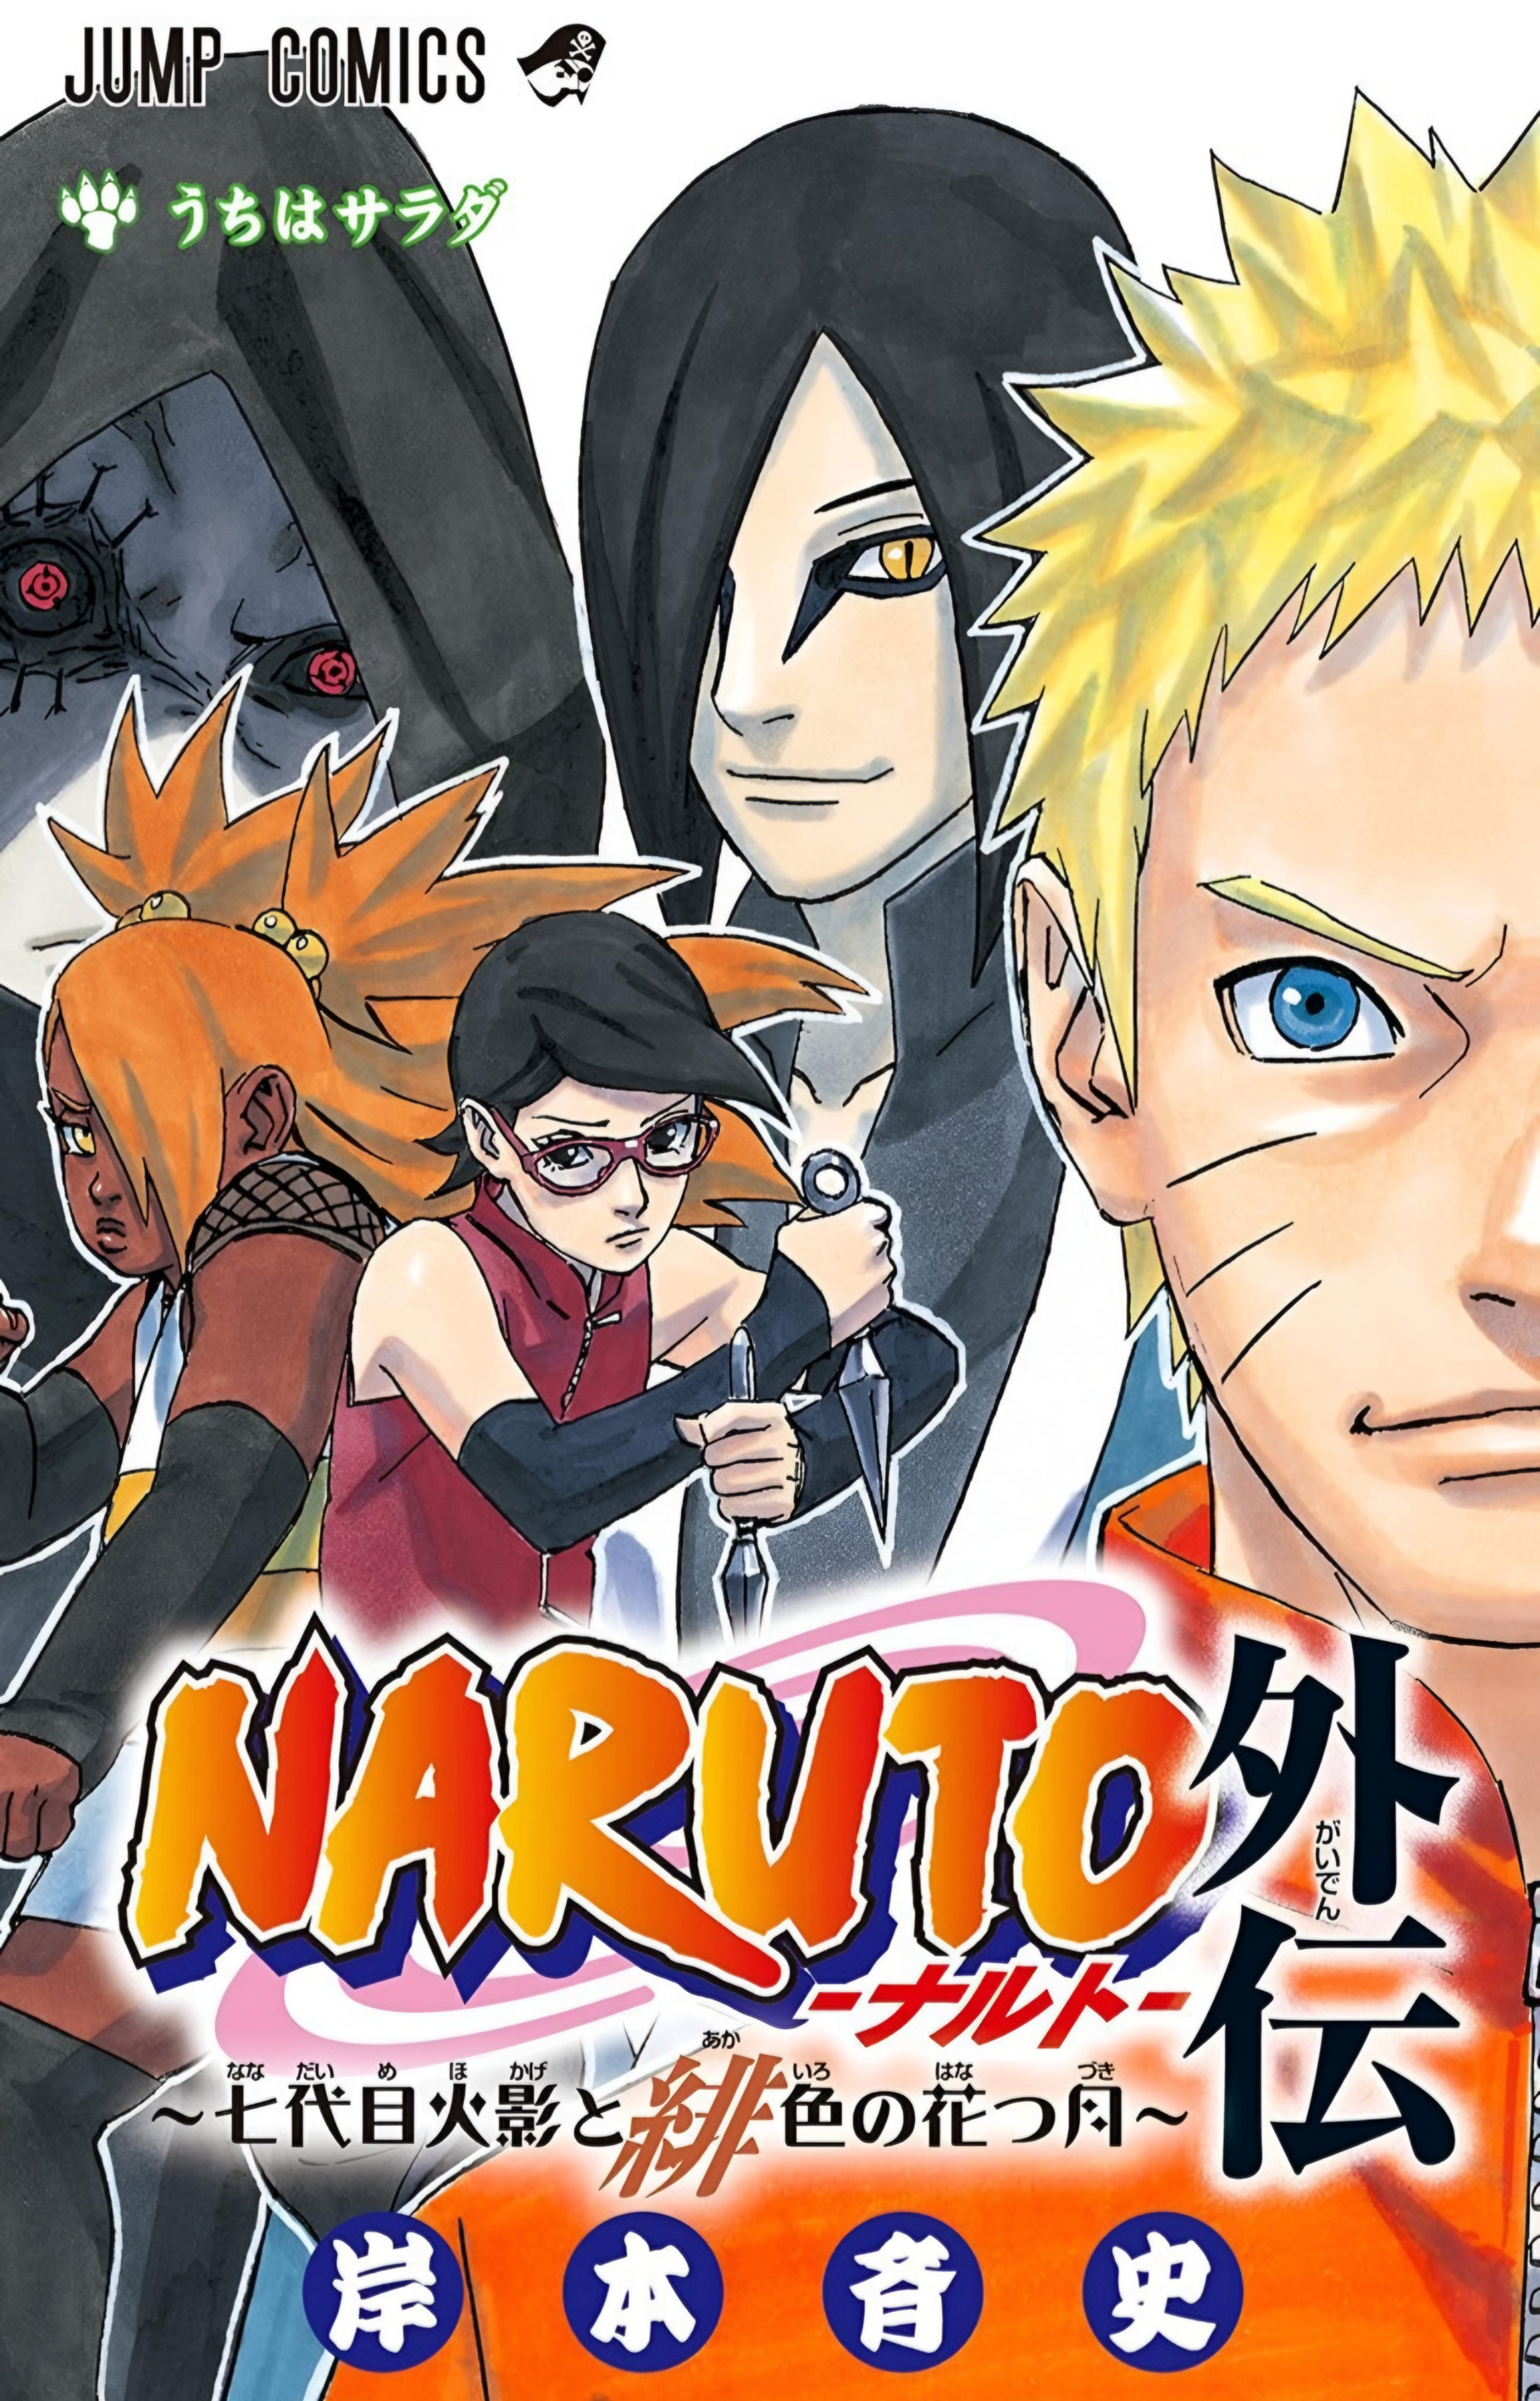 Bandeira Anime Naruto Akatsuki Sasuke Desenho Comic Hokage